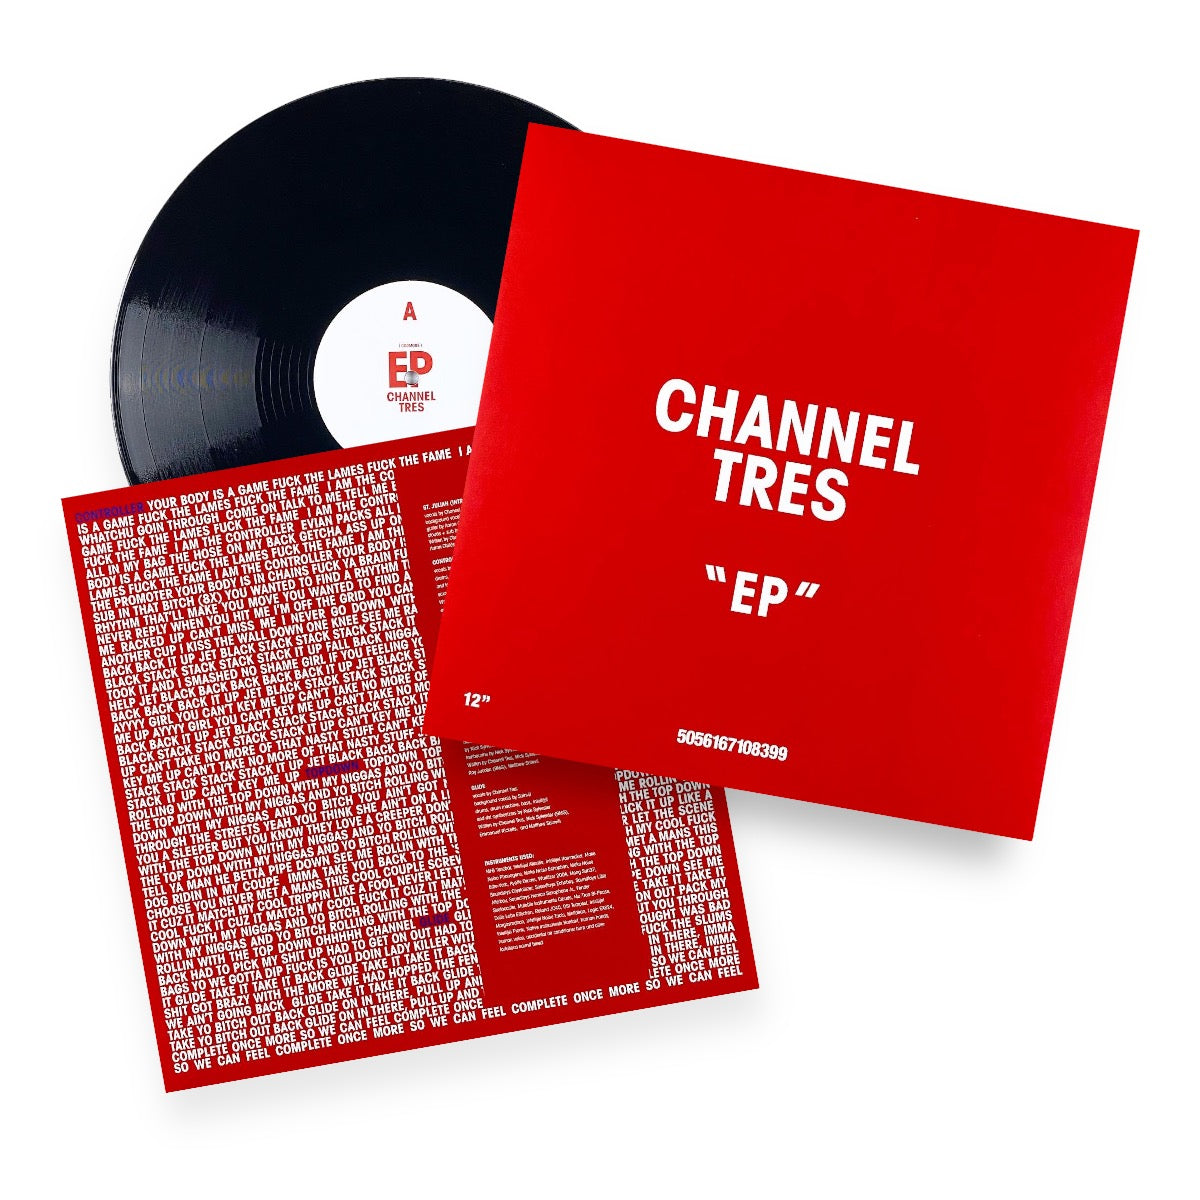 Channel Tres "EP" Vinyl